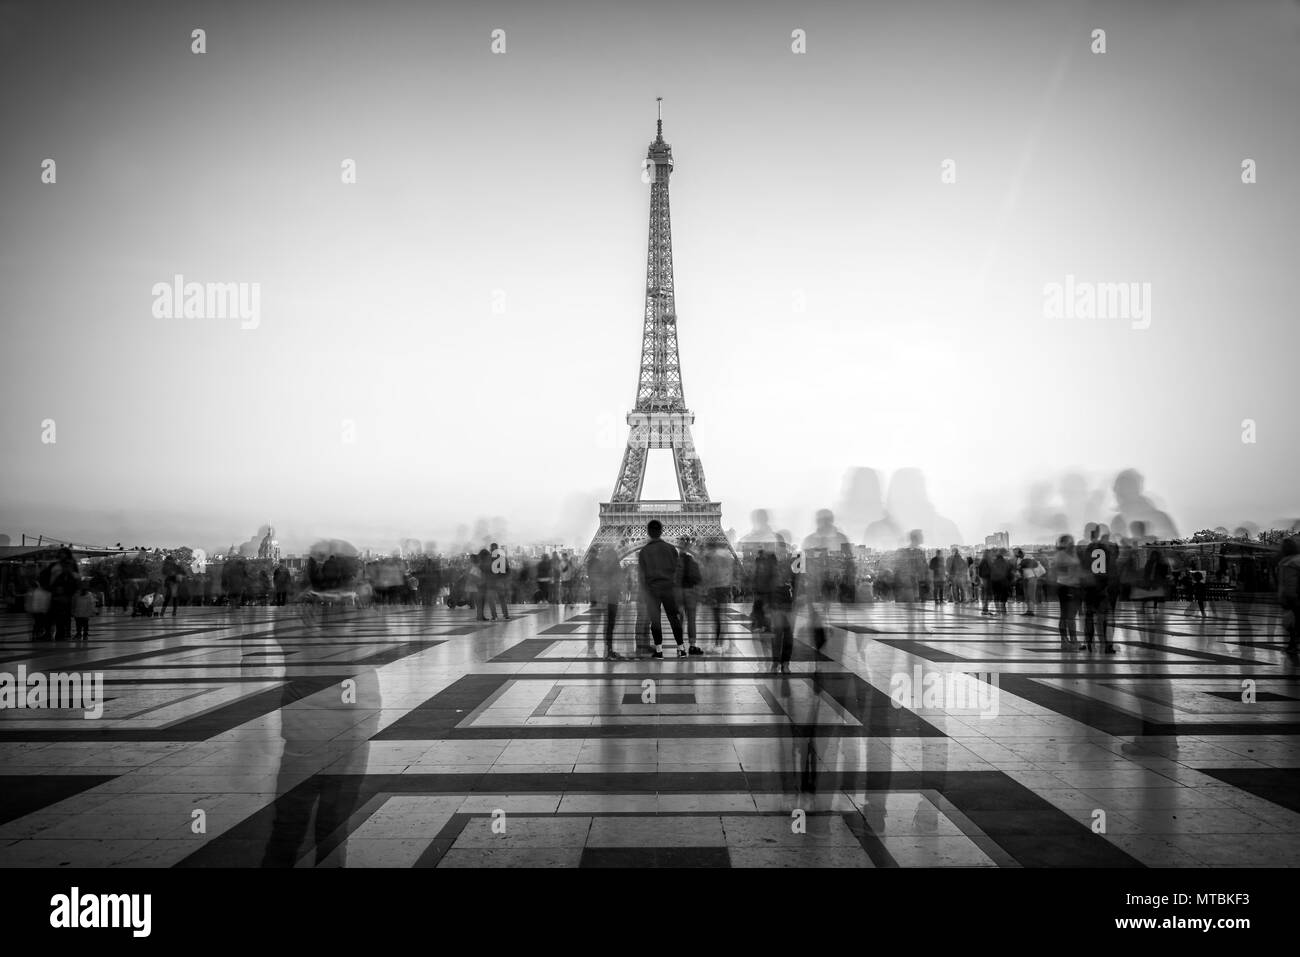 Les personnes floues sur la place du Trocadéro d'admirer la Tour Eiffel, Paris, France Banque D'Images